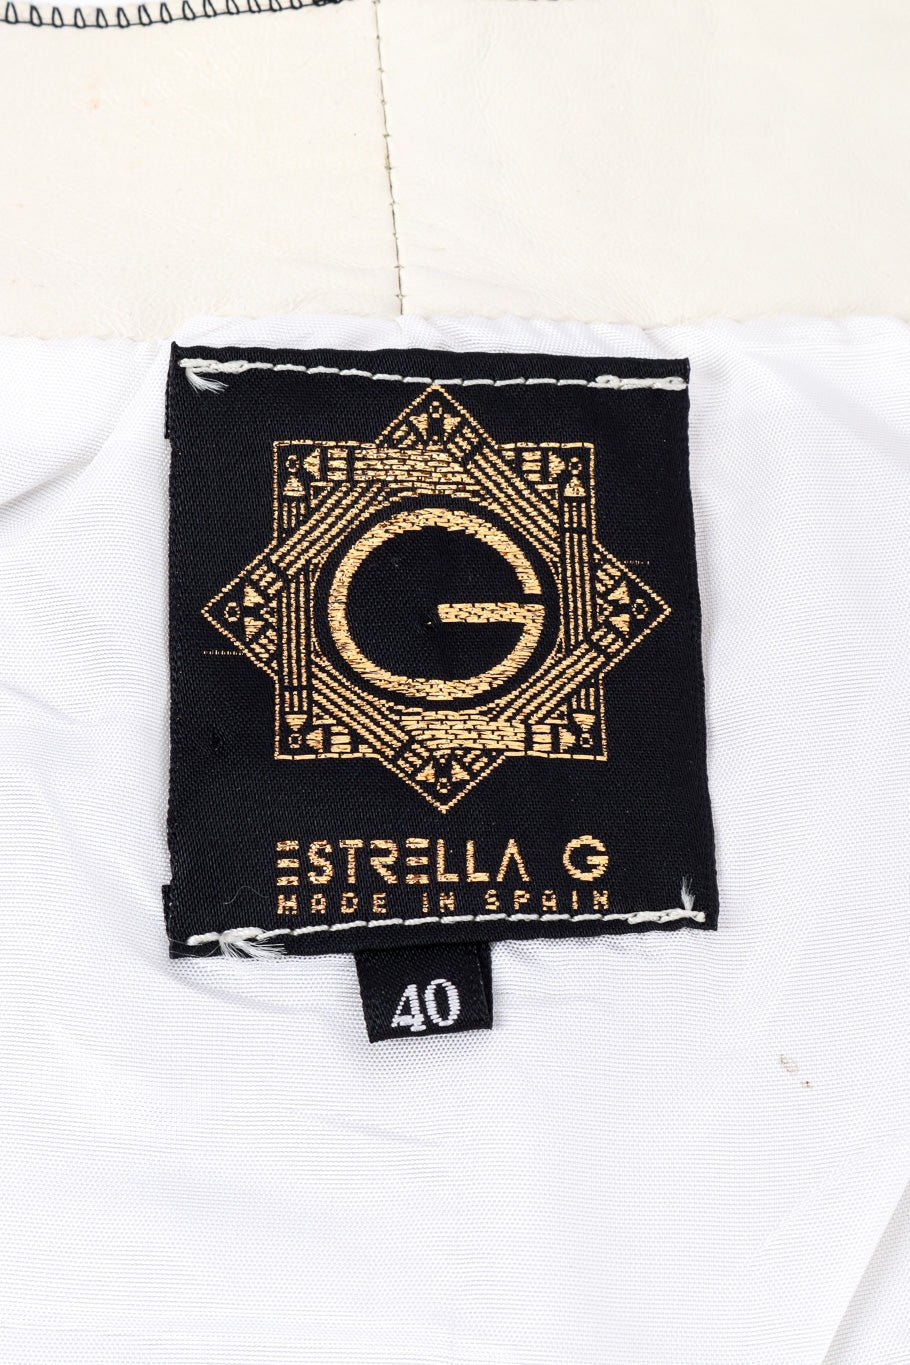 Vintage Estrella G Embroidered Leather Vest and Pant Set vest signature label closeup @Recessla